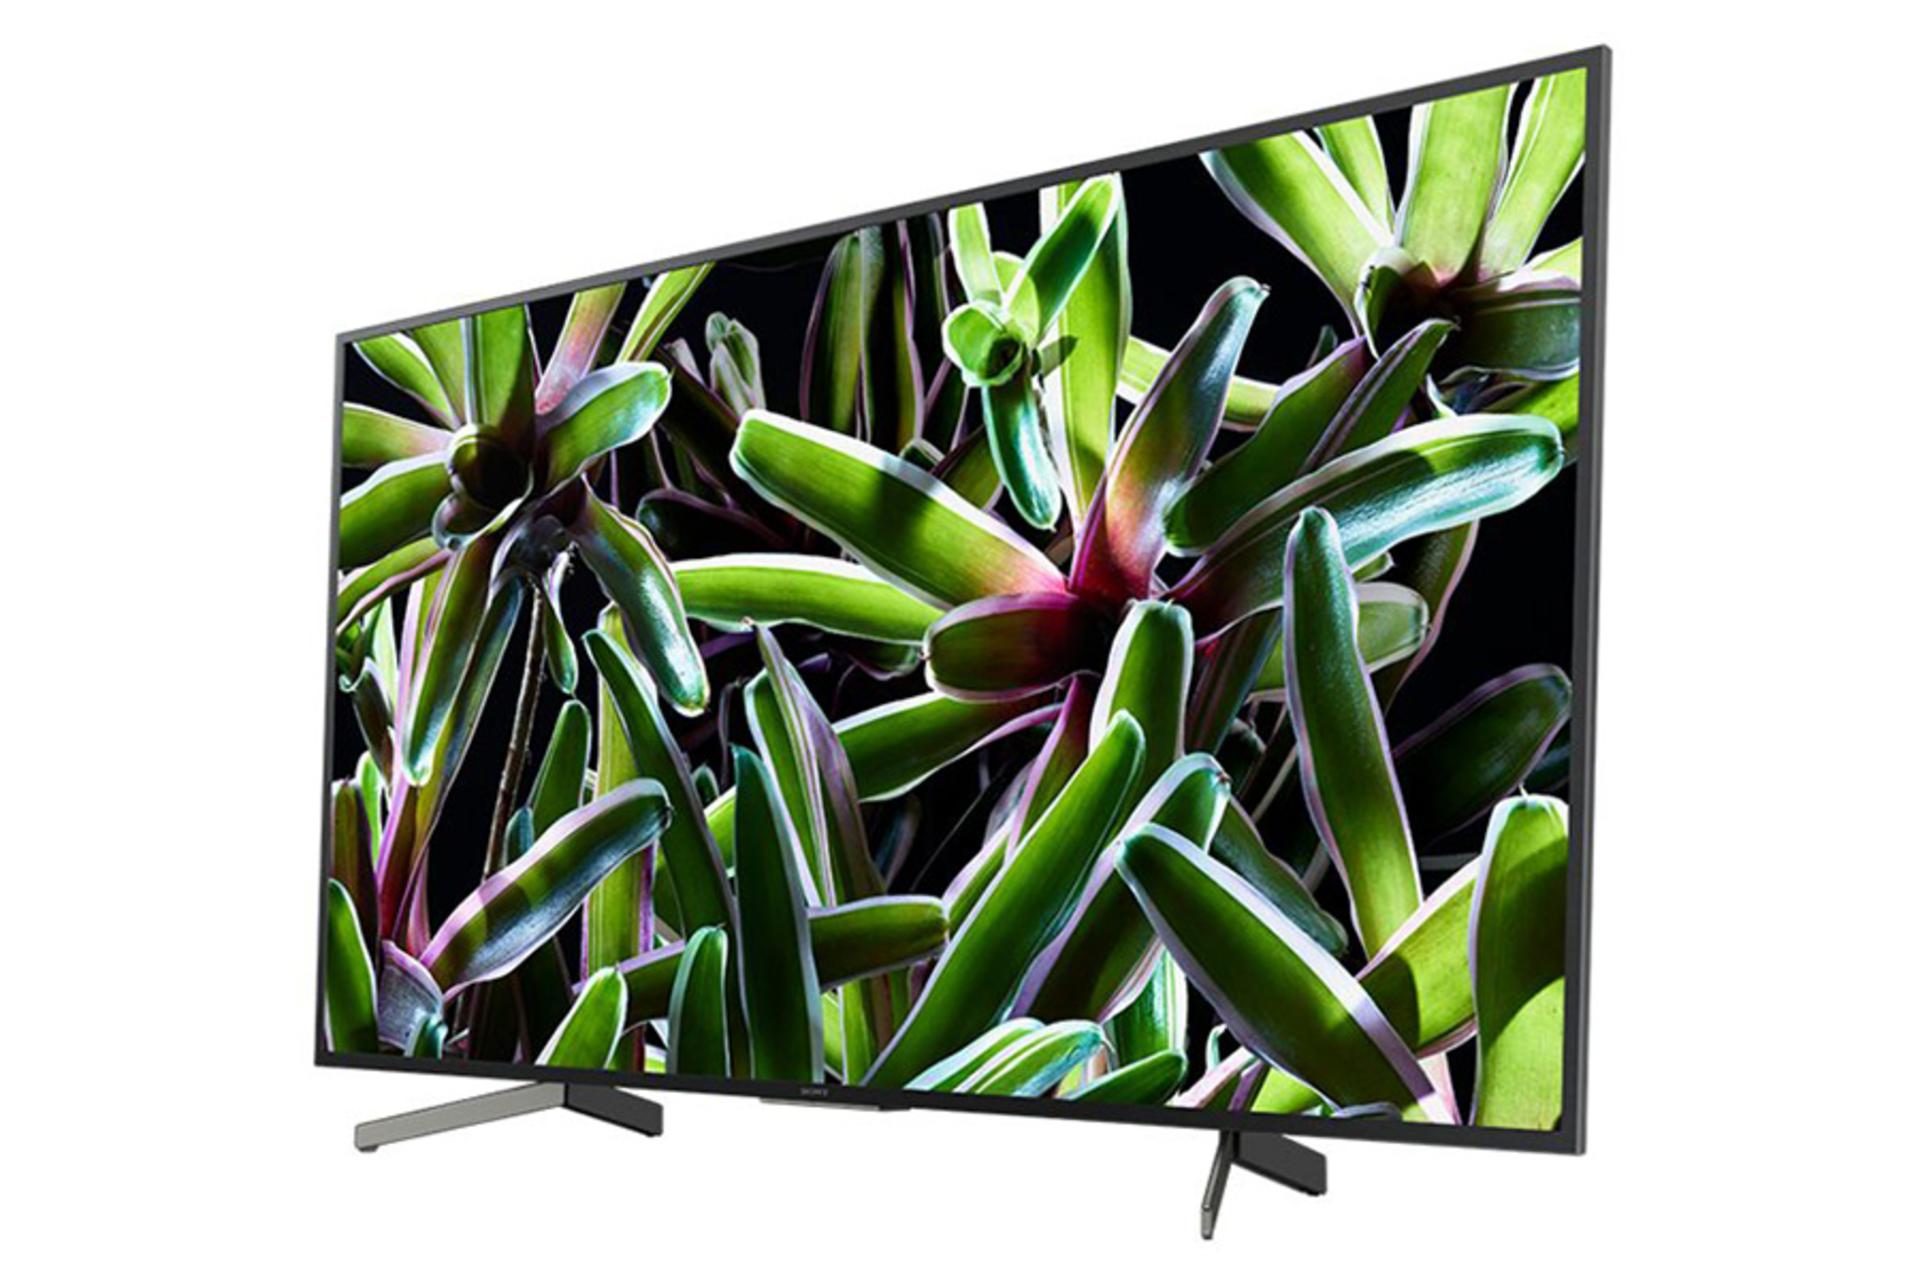 نمای نیمرخ تلویزیون سونی X7000G مدل 55 اینچ با صفحه روشن